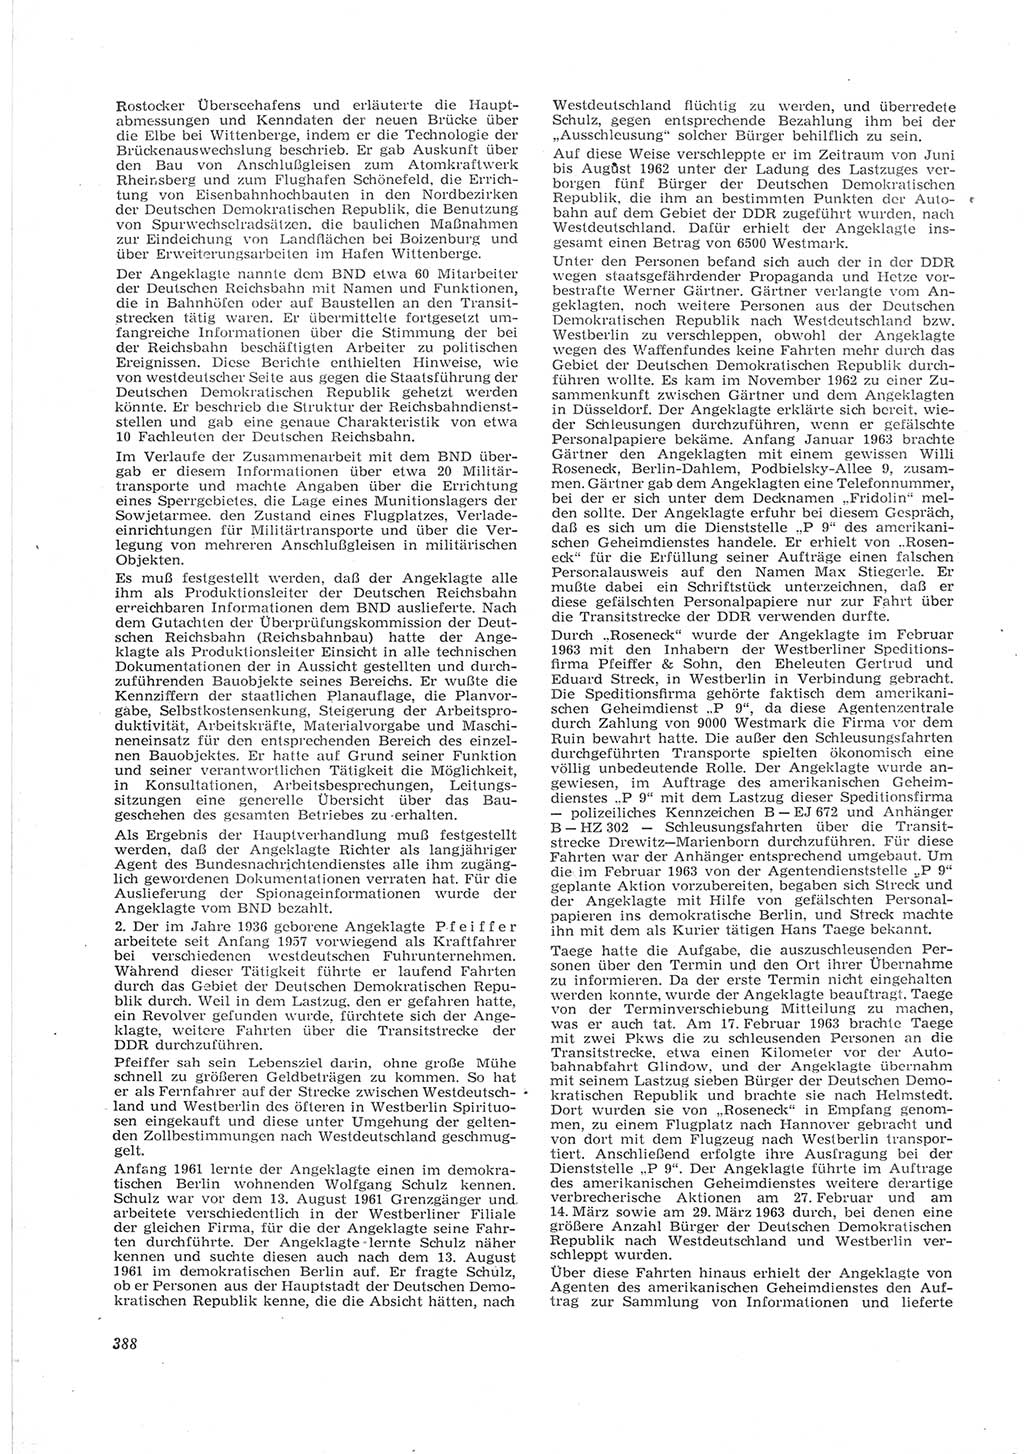 Neue Justiz (NJ), Zeitschrift für Recht und Rechtswissenschaft [Deutsche Demokratische Republik (DDR)], 17. Jahrgang 1963, Seite 388 (NJ DDR 1963, S. 388)